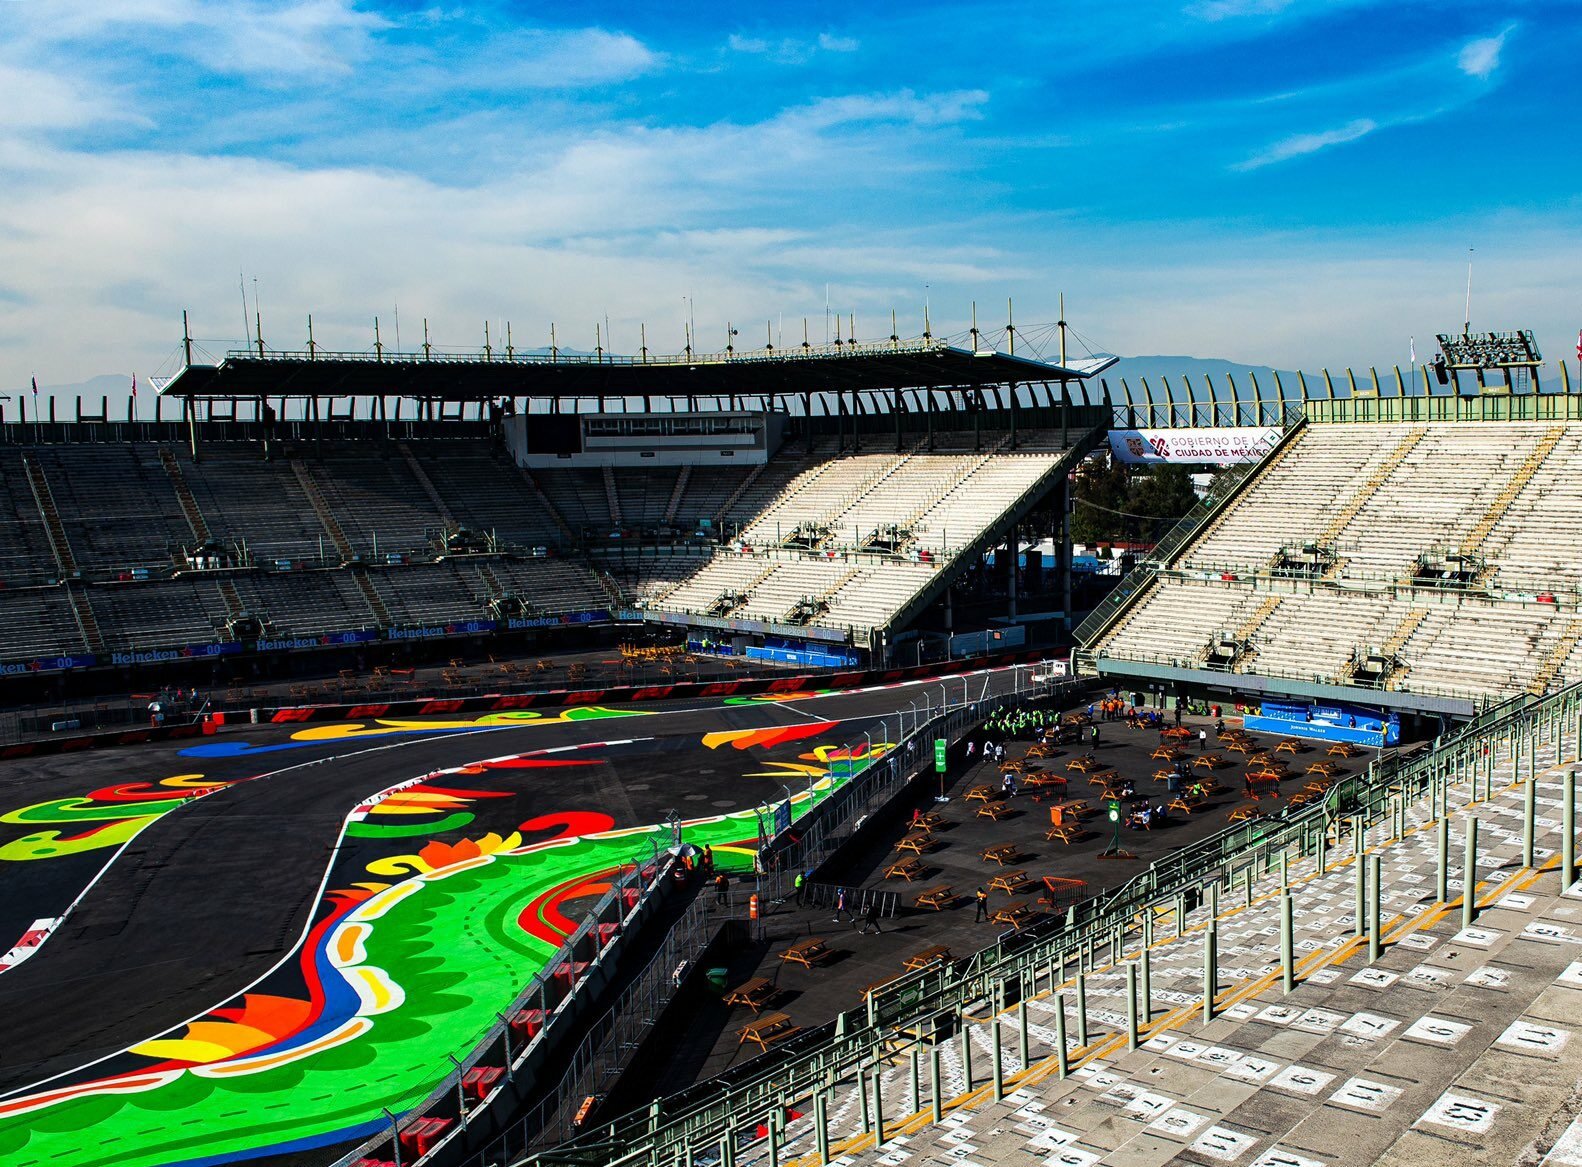 F1: Confira resultado completo do primeiro treino livre do GP do México -  Notícia de F1